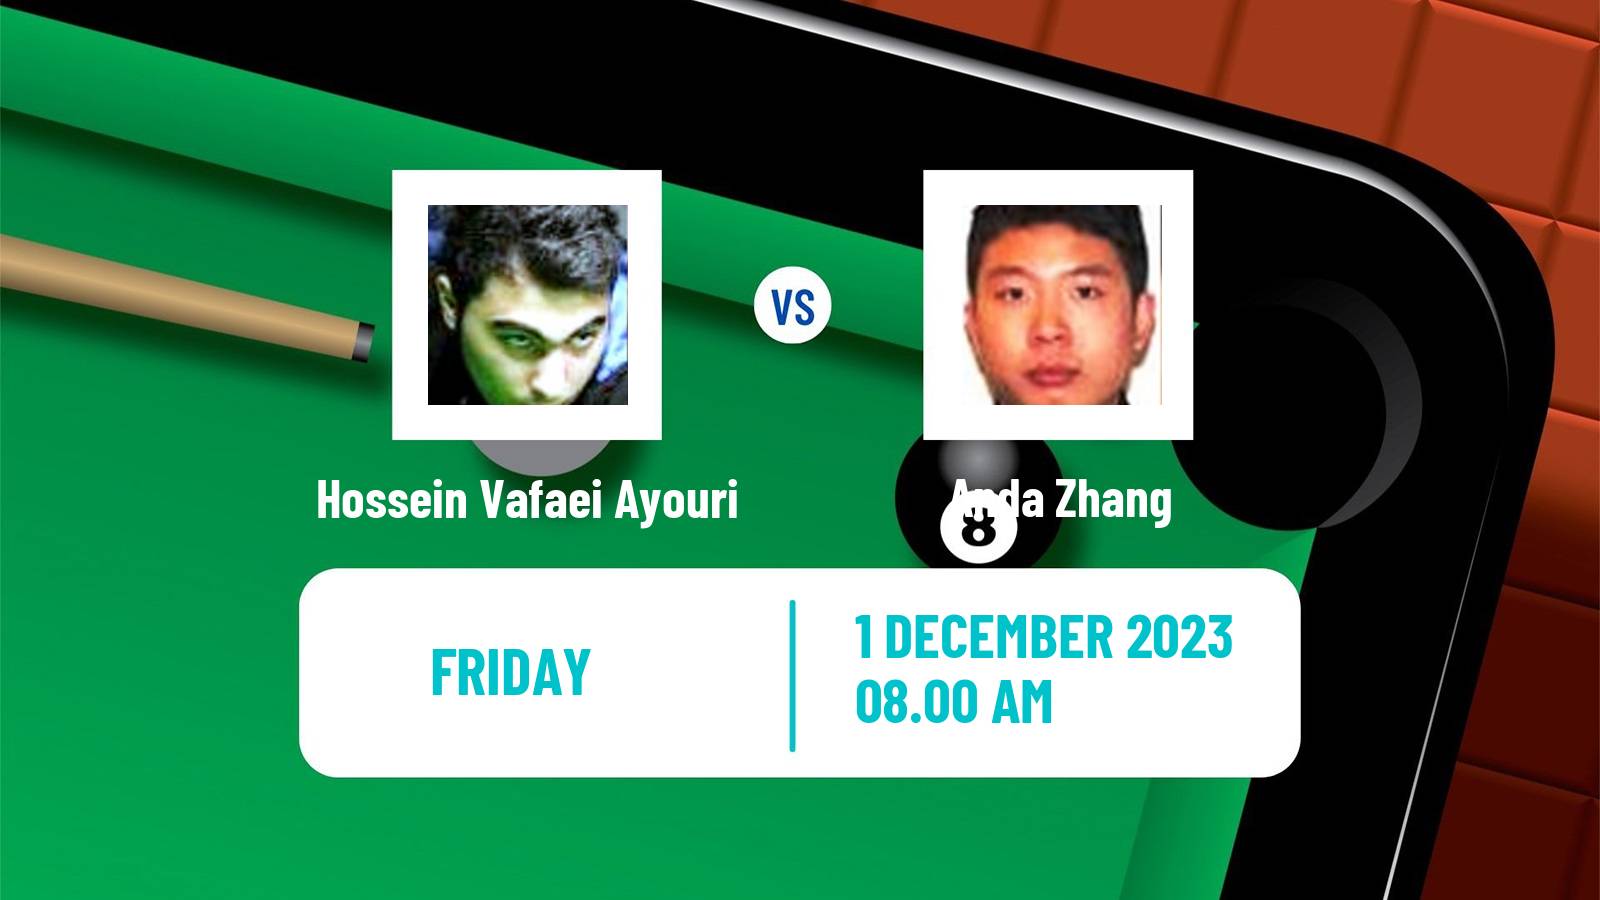 Snooker Uk Championship Hossein Vafaei Ayouri - Anda Zhang